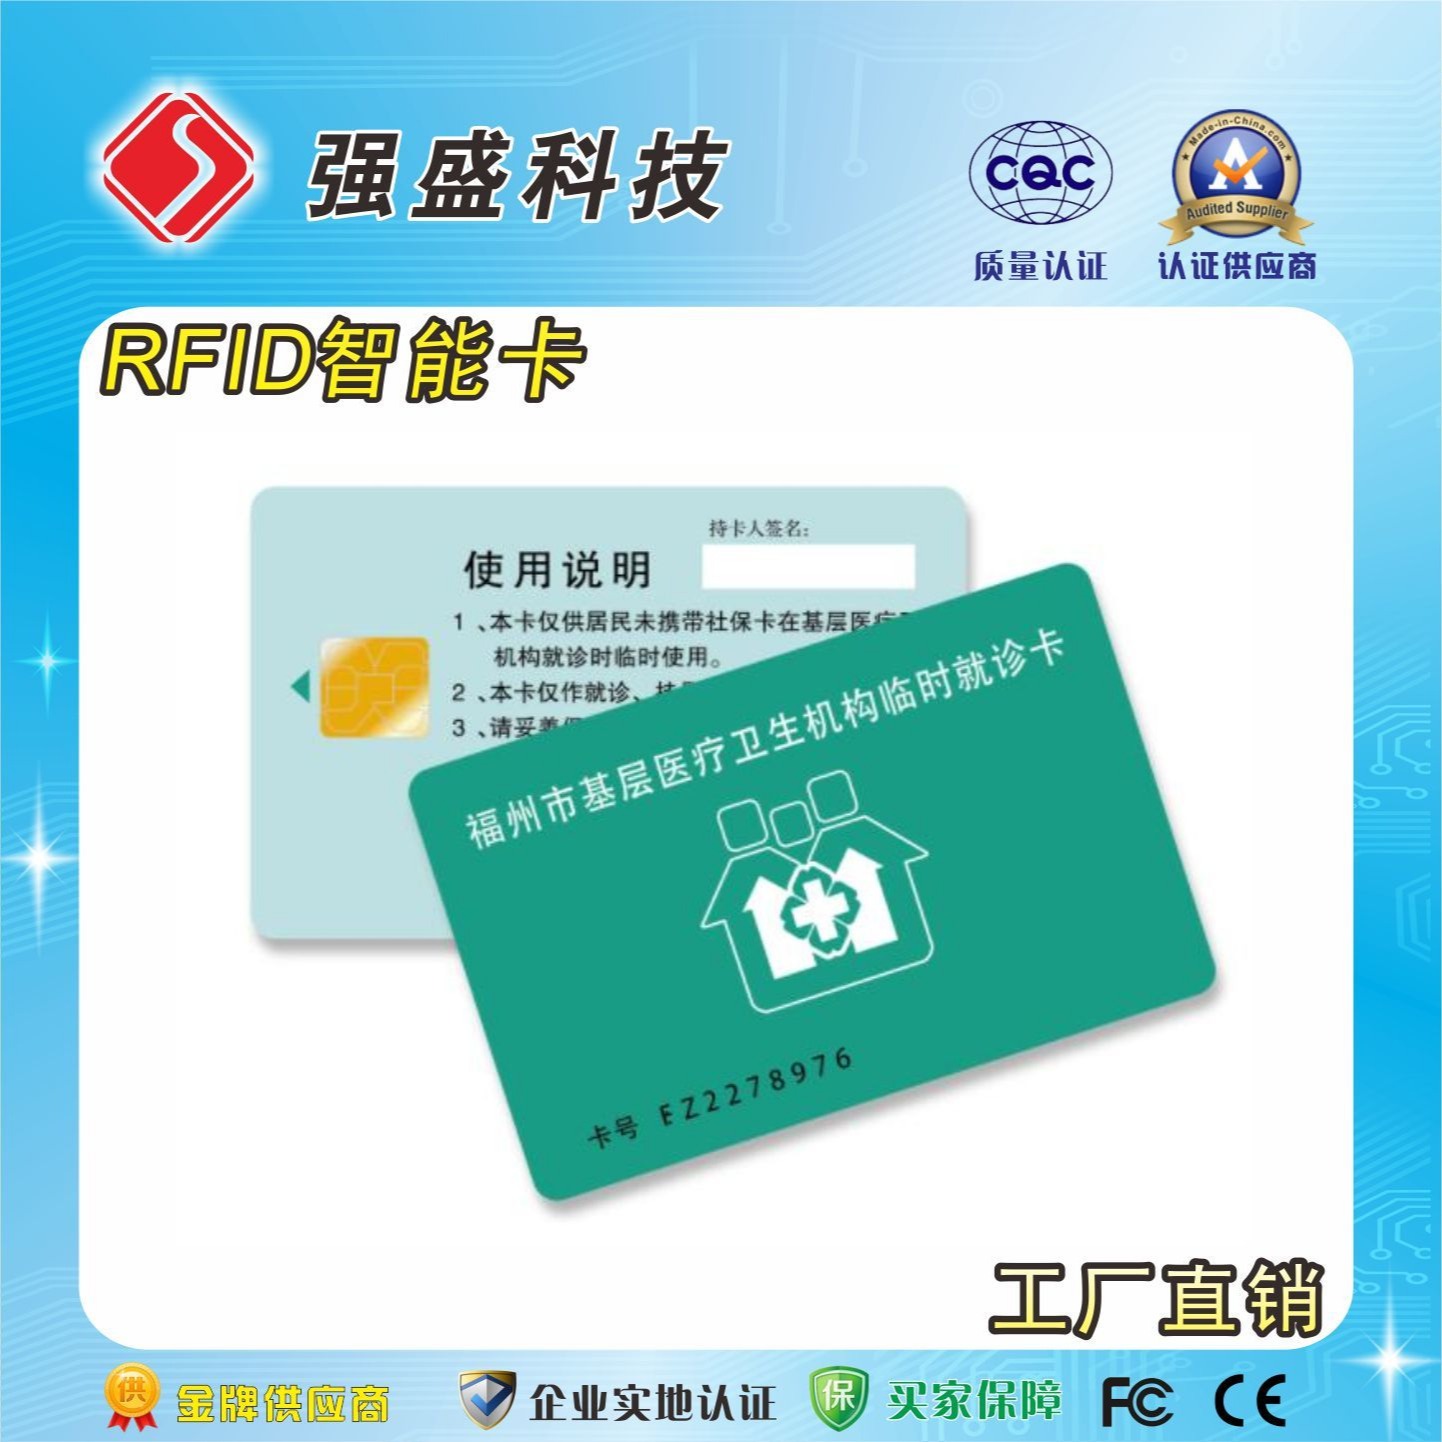 供应SLE4428接触式芯片卡 医疗保险卡 IC卡印刷